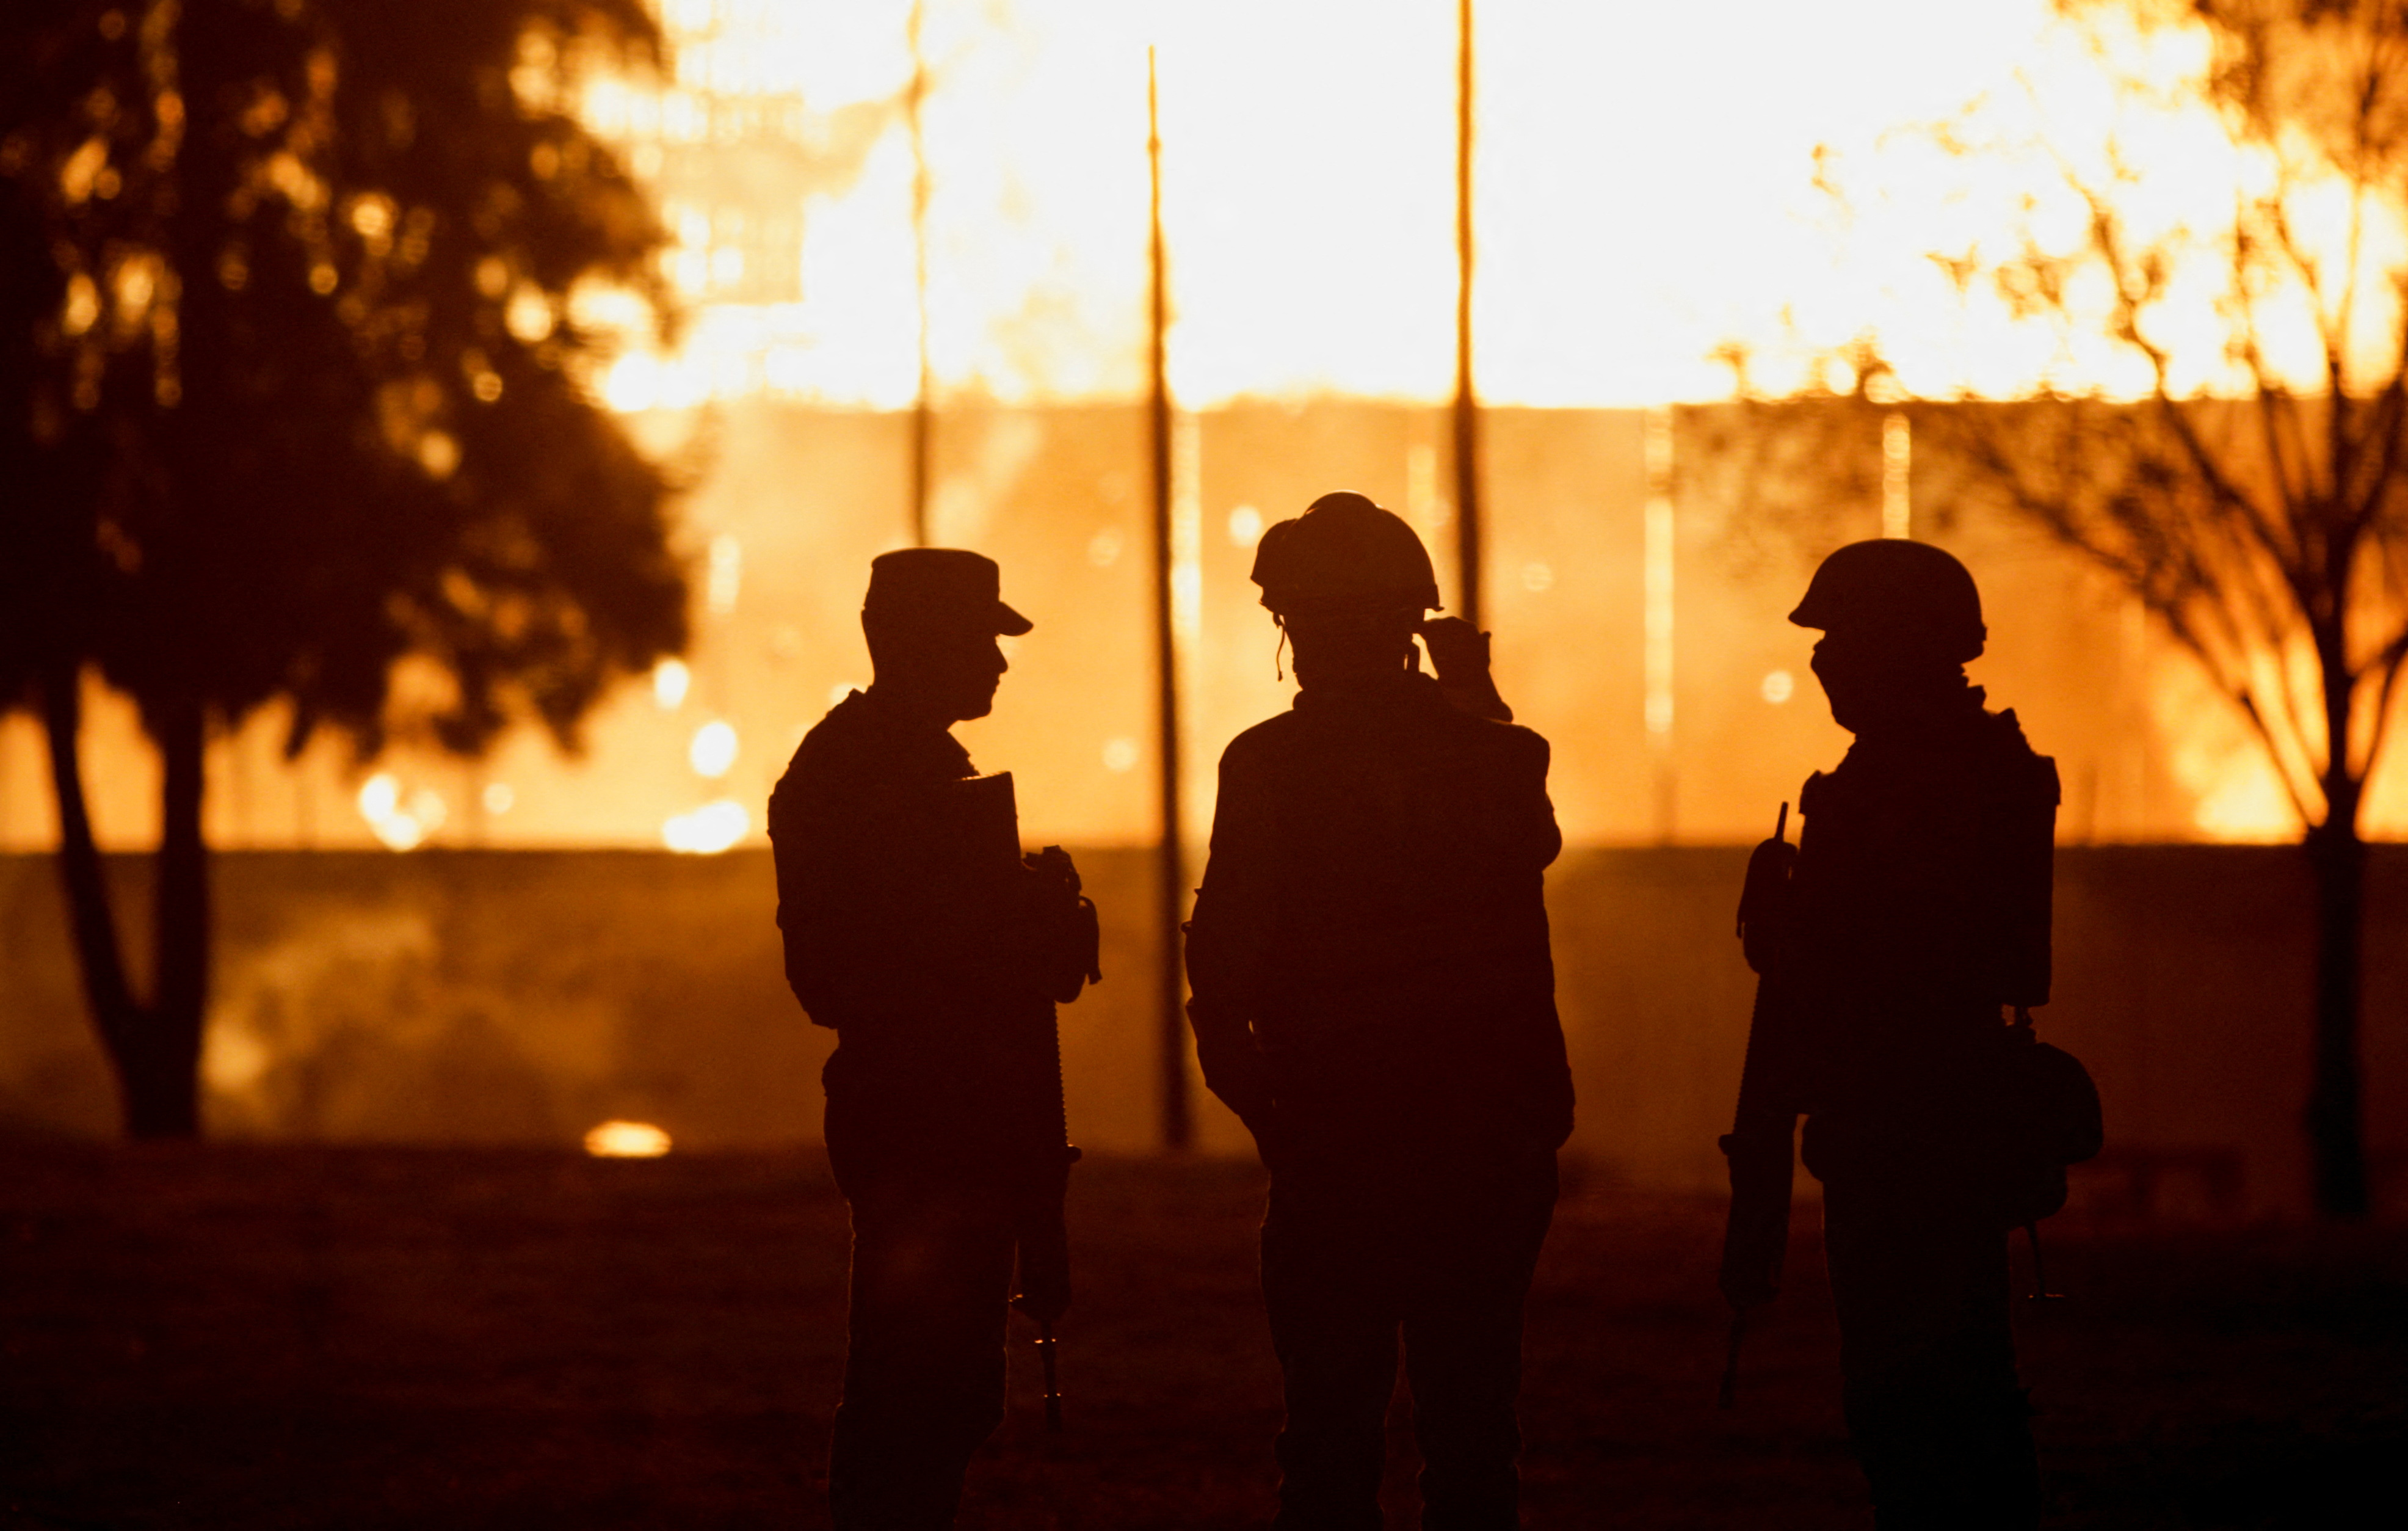 Miembros de la Guardia Nacional verificaron que la zona estuviera bajo control. REUTERS/Luis Cortes